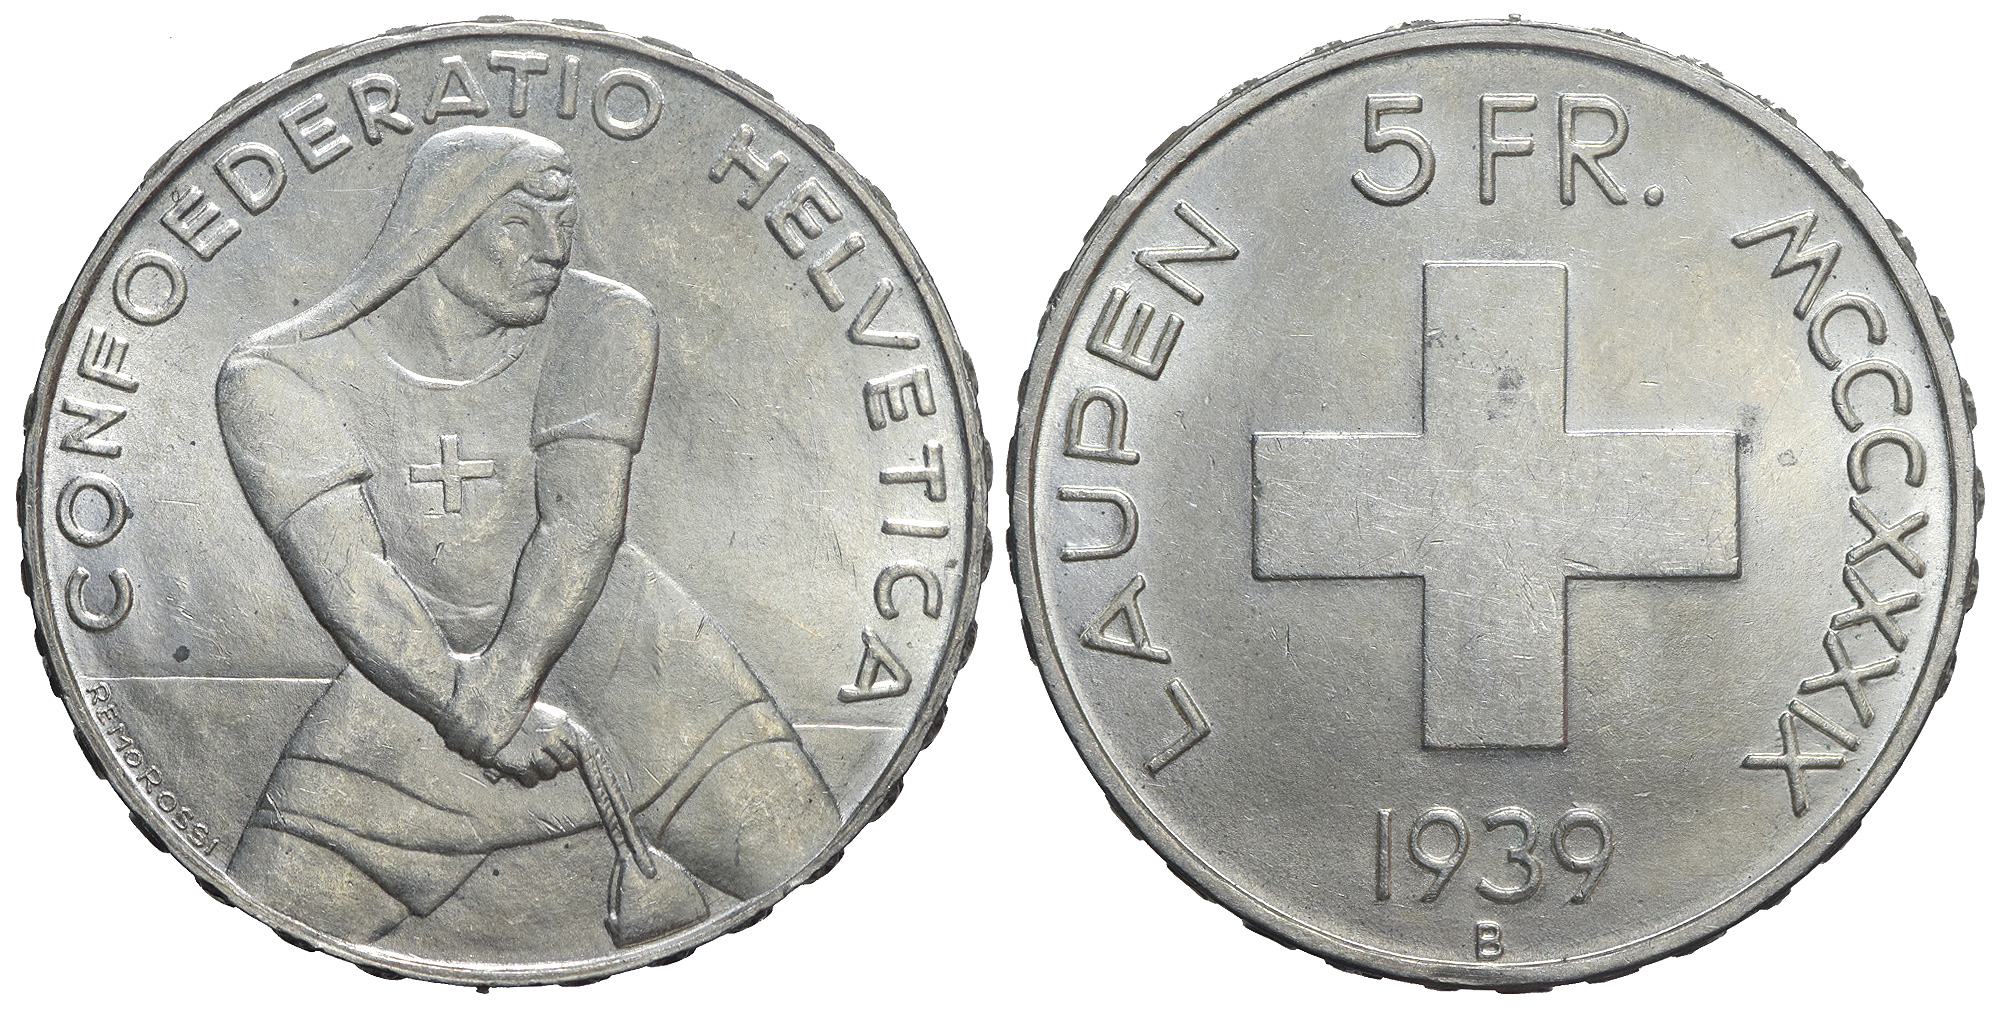 Switzerland Commemorative Coinage Francs 1939 